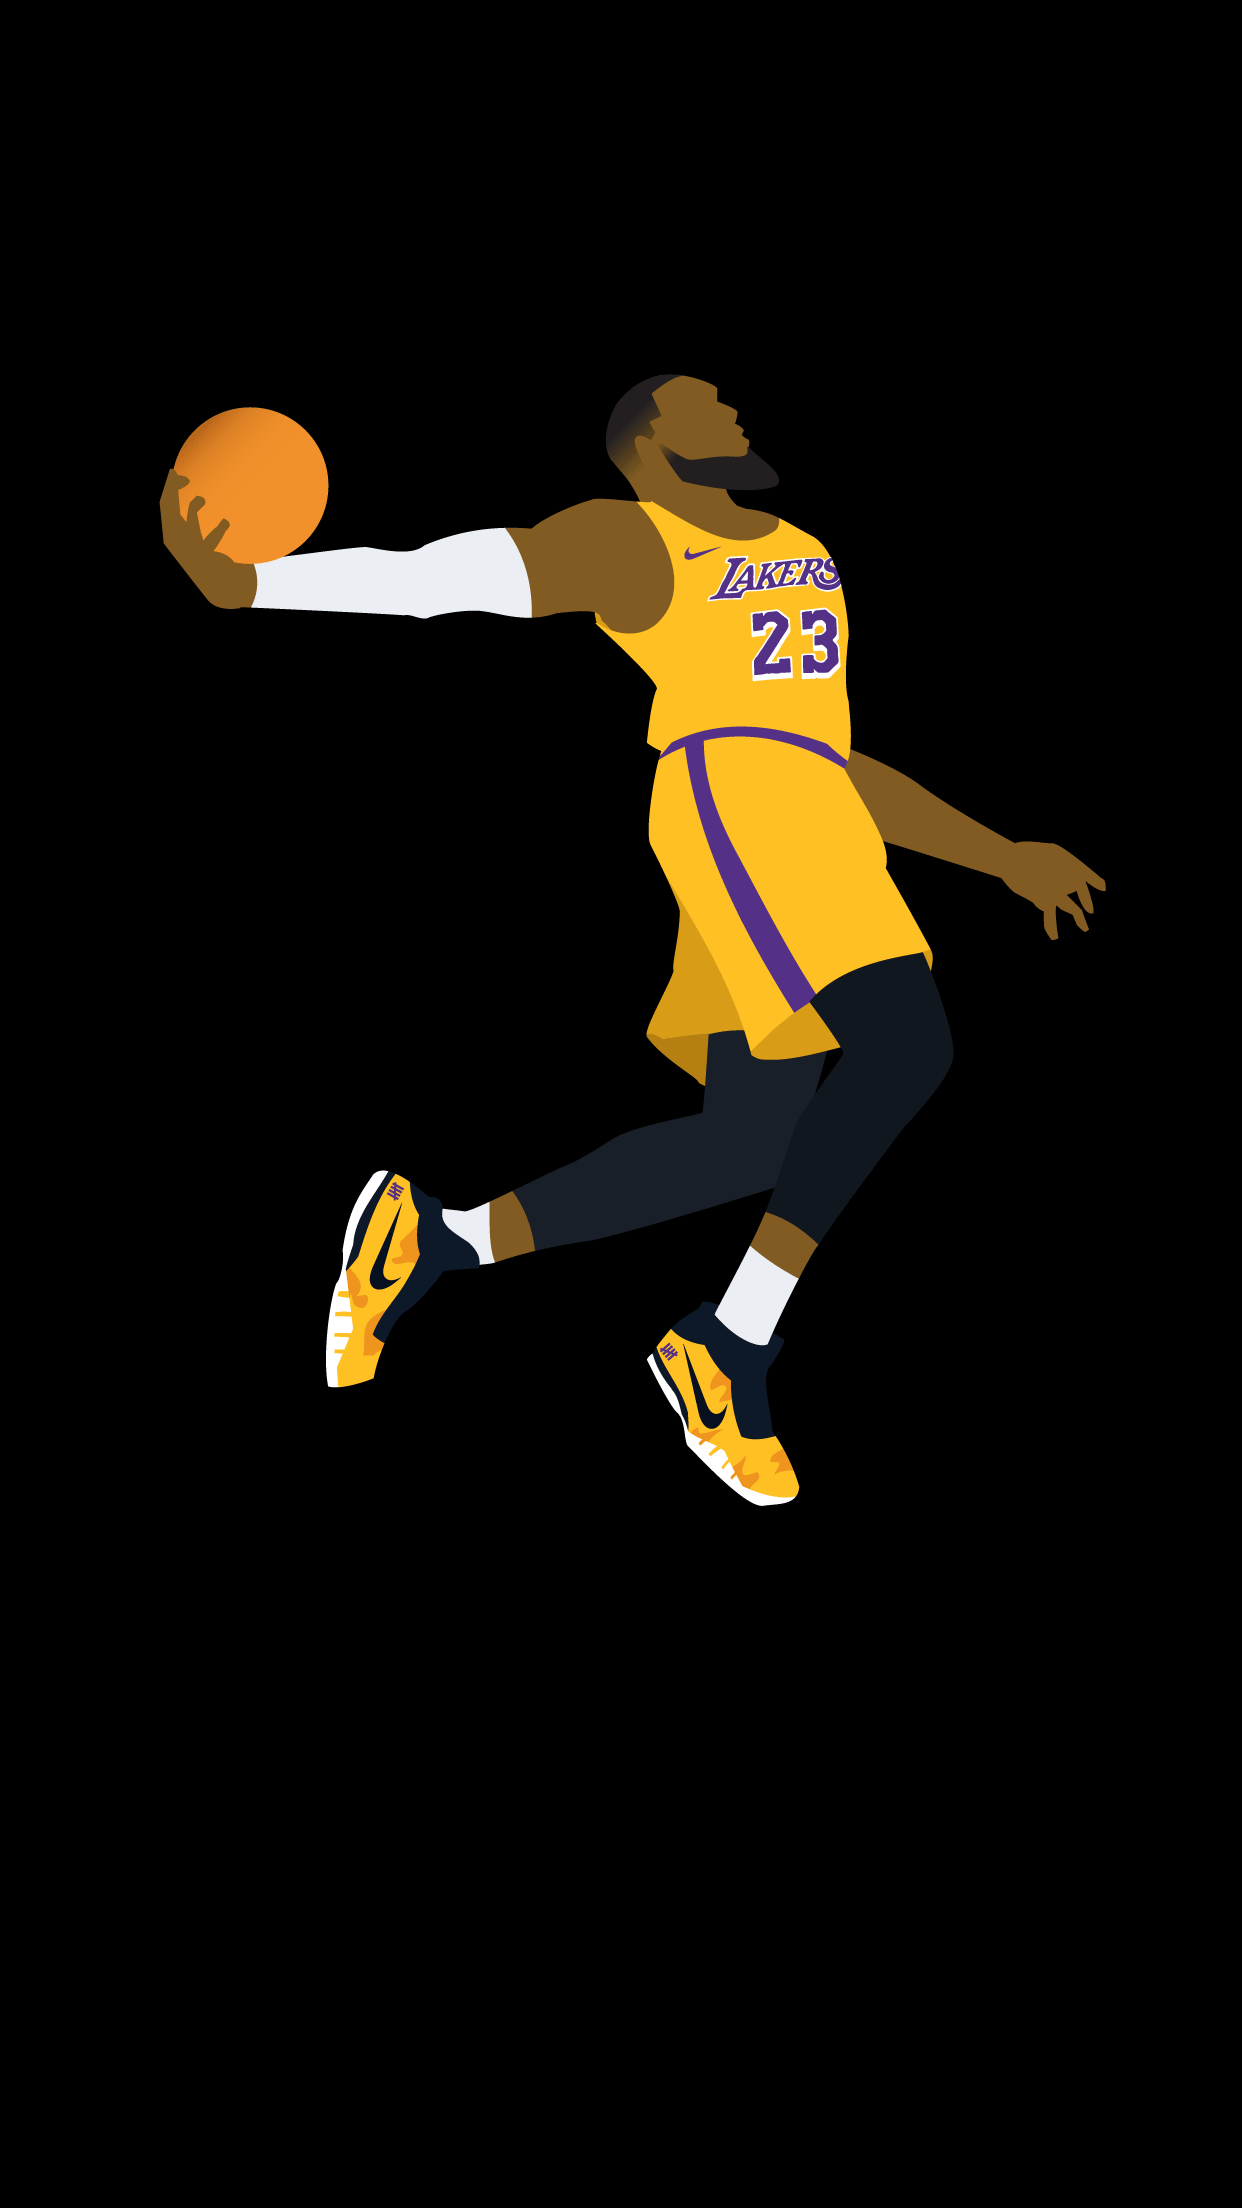 Los Angeles Lakers Wallpaper - EnJpg